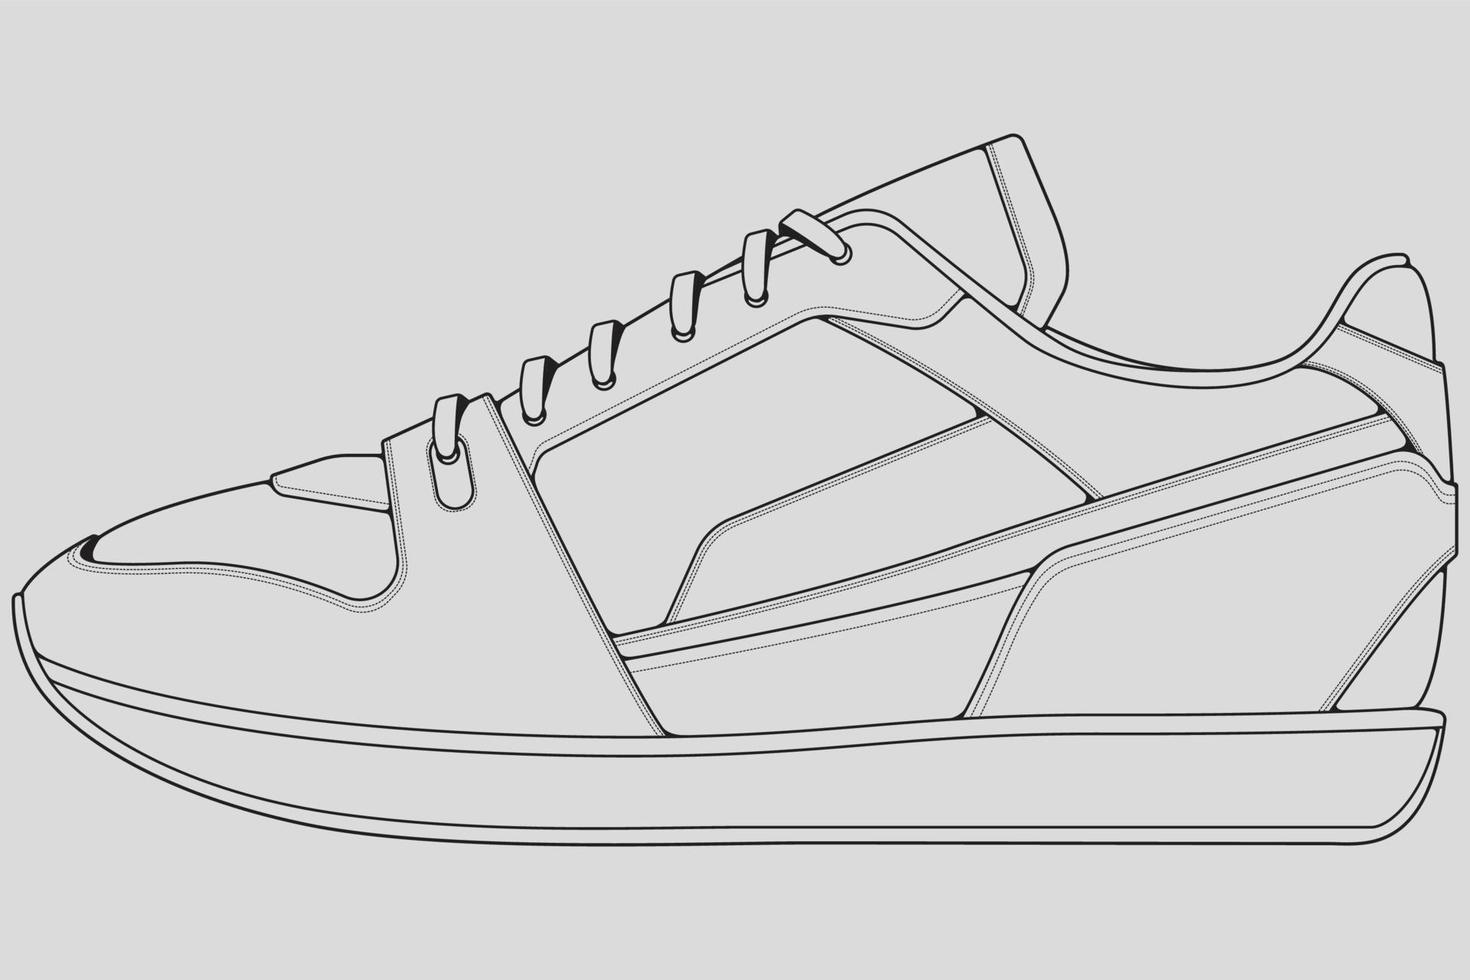 skor sneaker kontur ritning vektor, sneakers ritade i en skiss stil, svart linje sneaker utbildare mall kontur, vektor illustration.